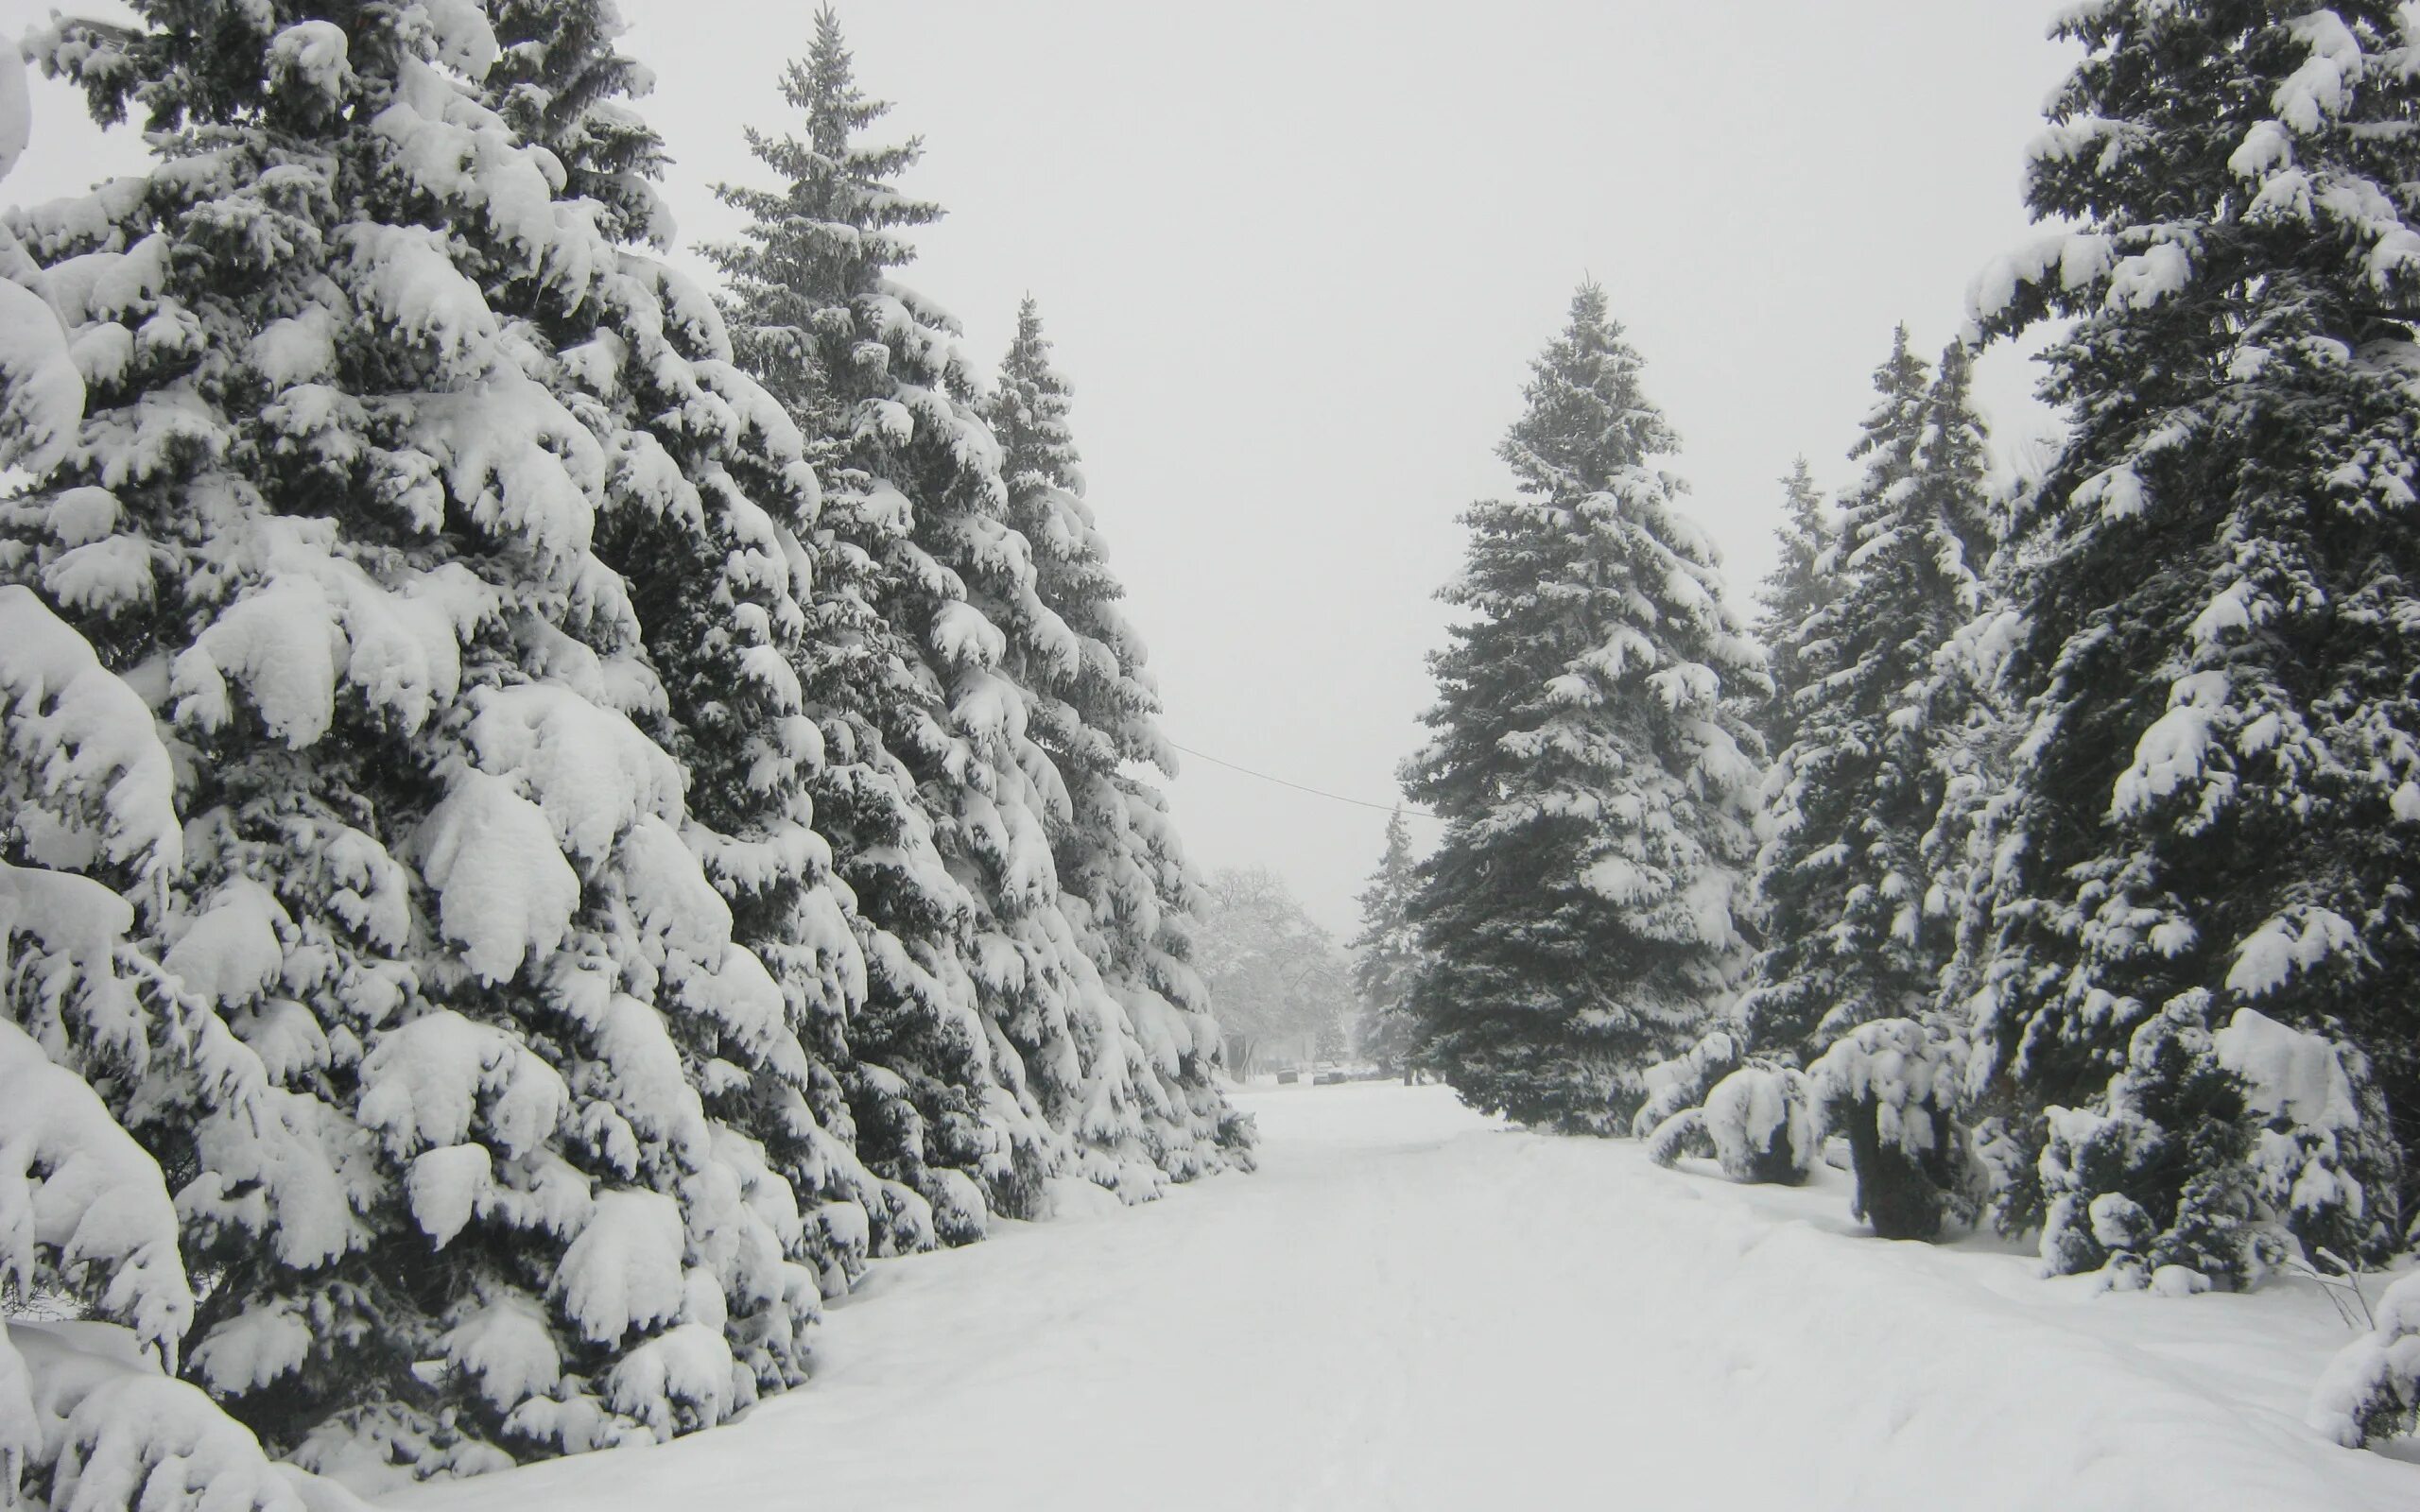 Снег лежит на елях. Елка в лесу зимой. Зимний лес из елок. Елка зимой в снегу. Зима ели в снегу.